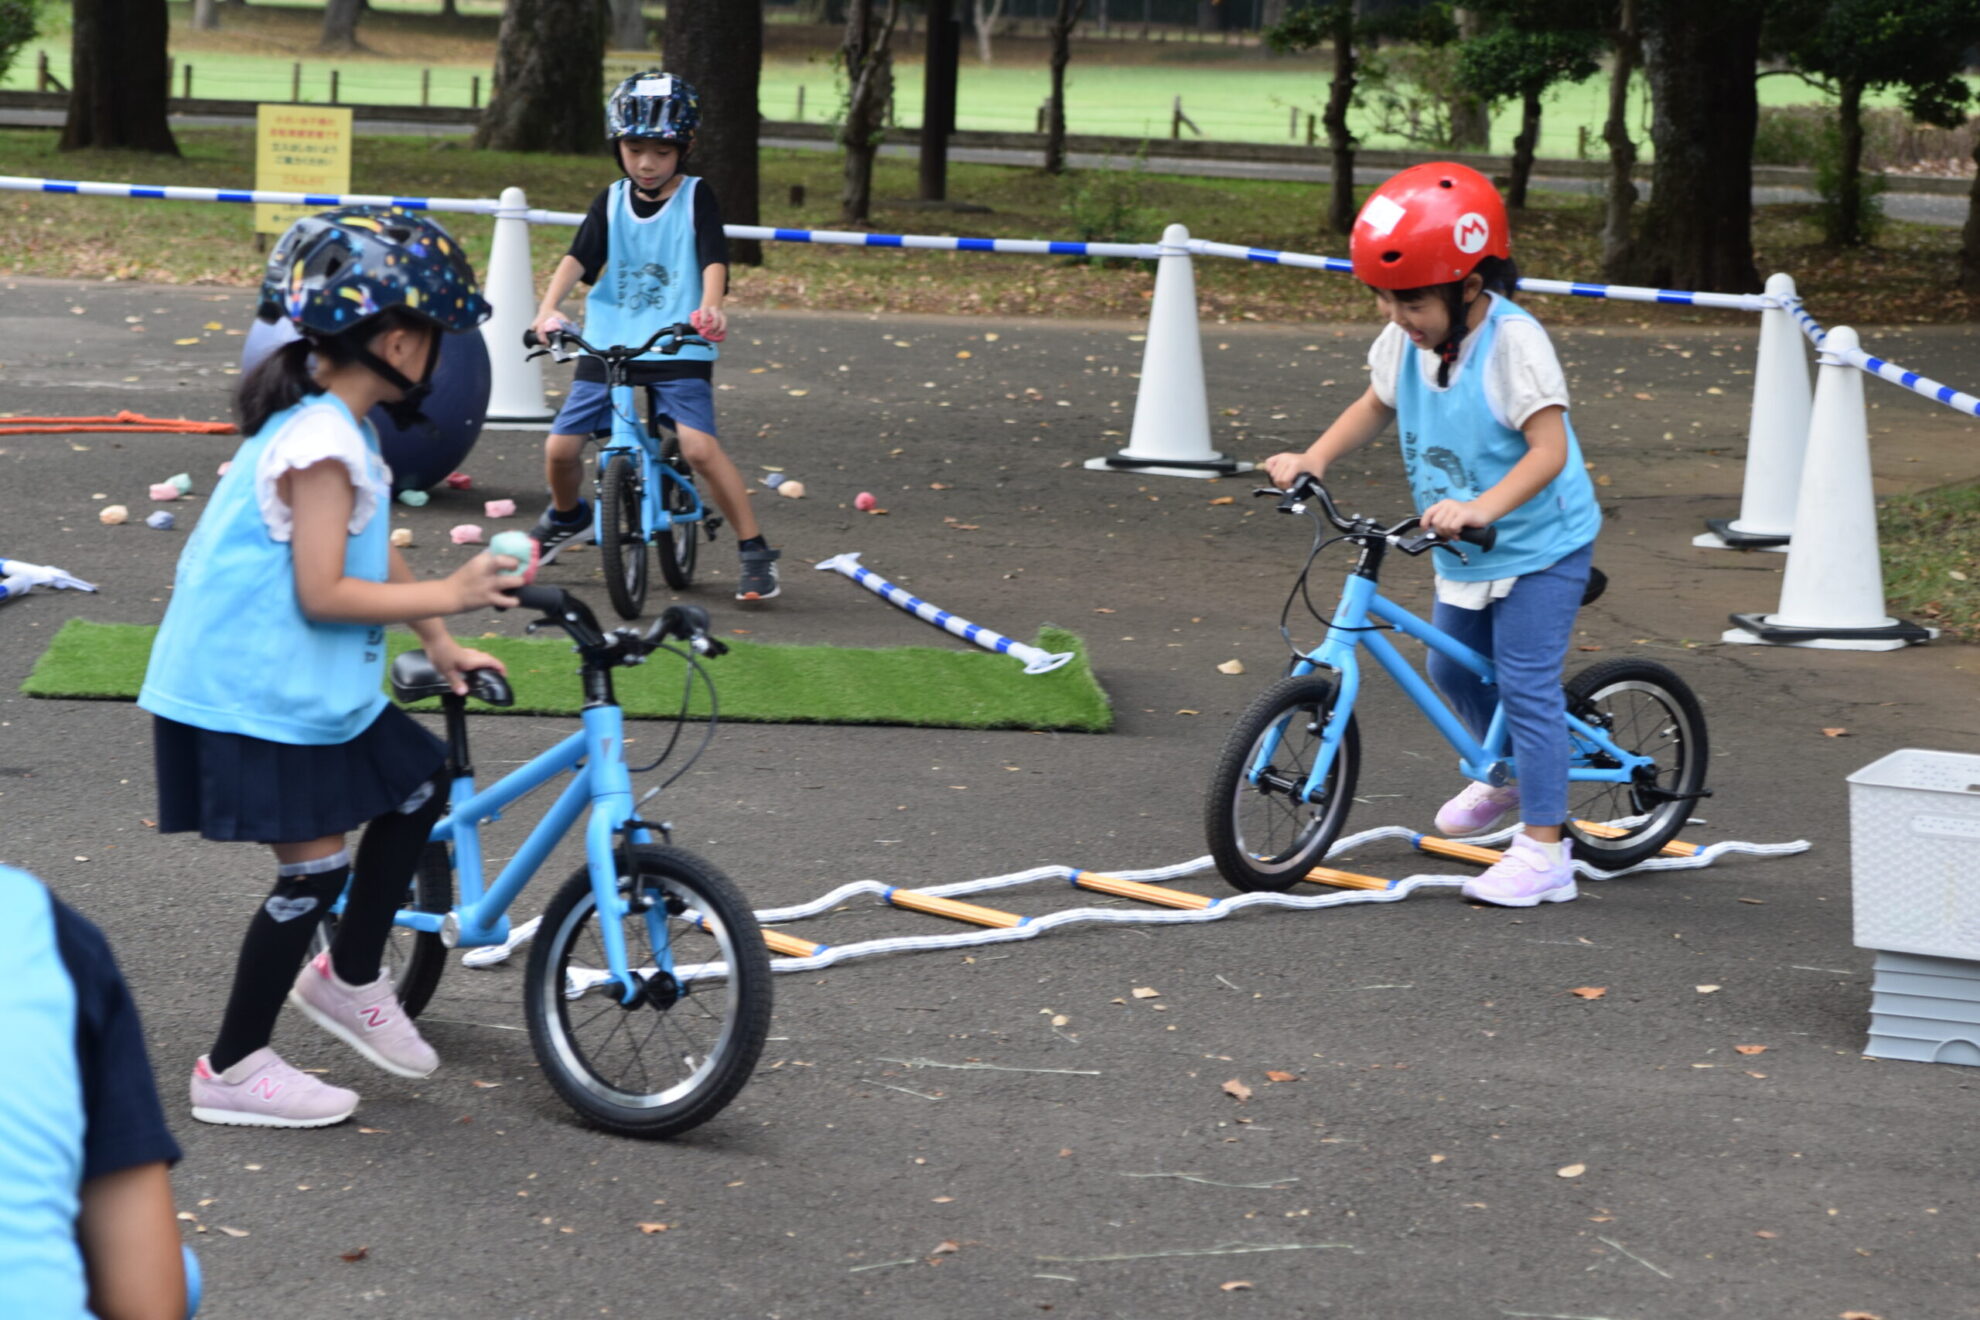 10月18日 (水)東京都小金井公園 幼児向け自転車教室mini を開催します